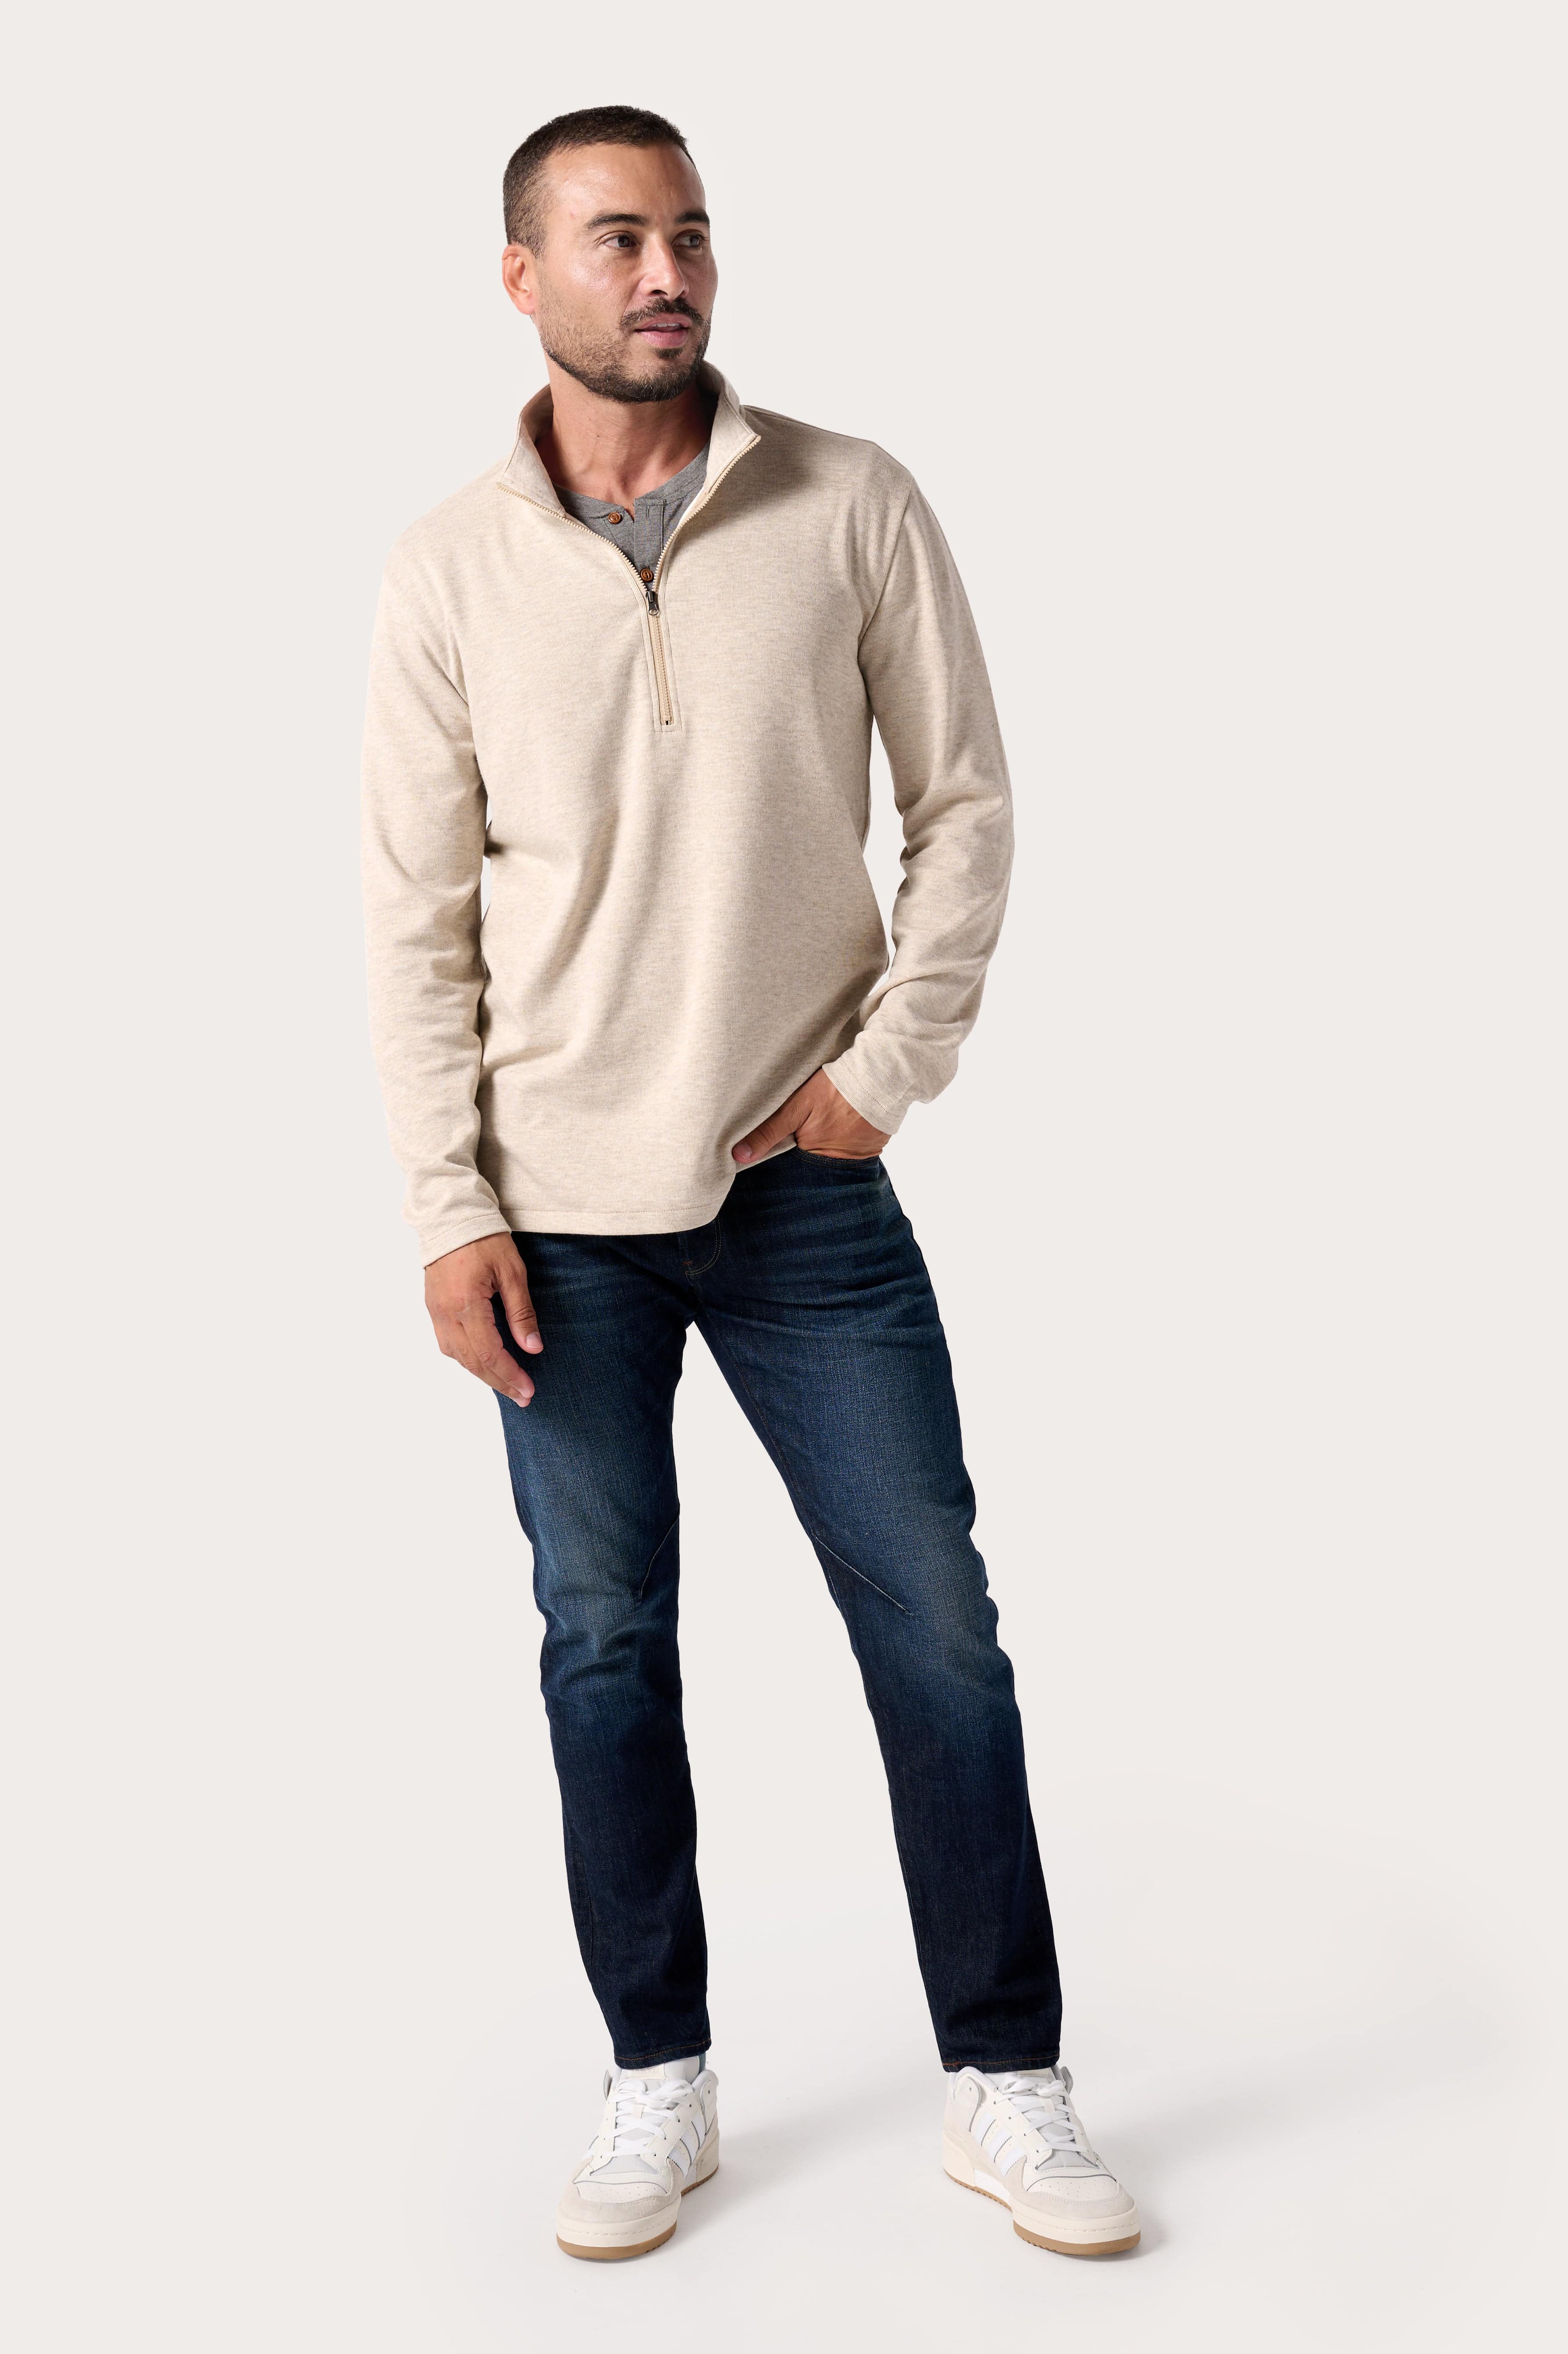 Horizon Men's Long Sleeve Half Zip Pullover